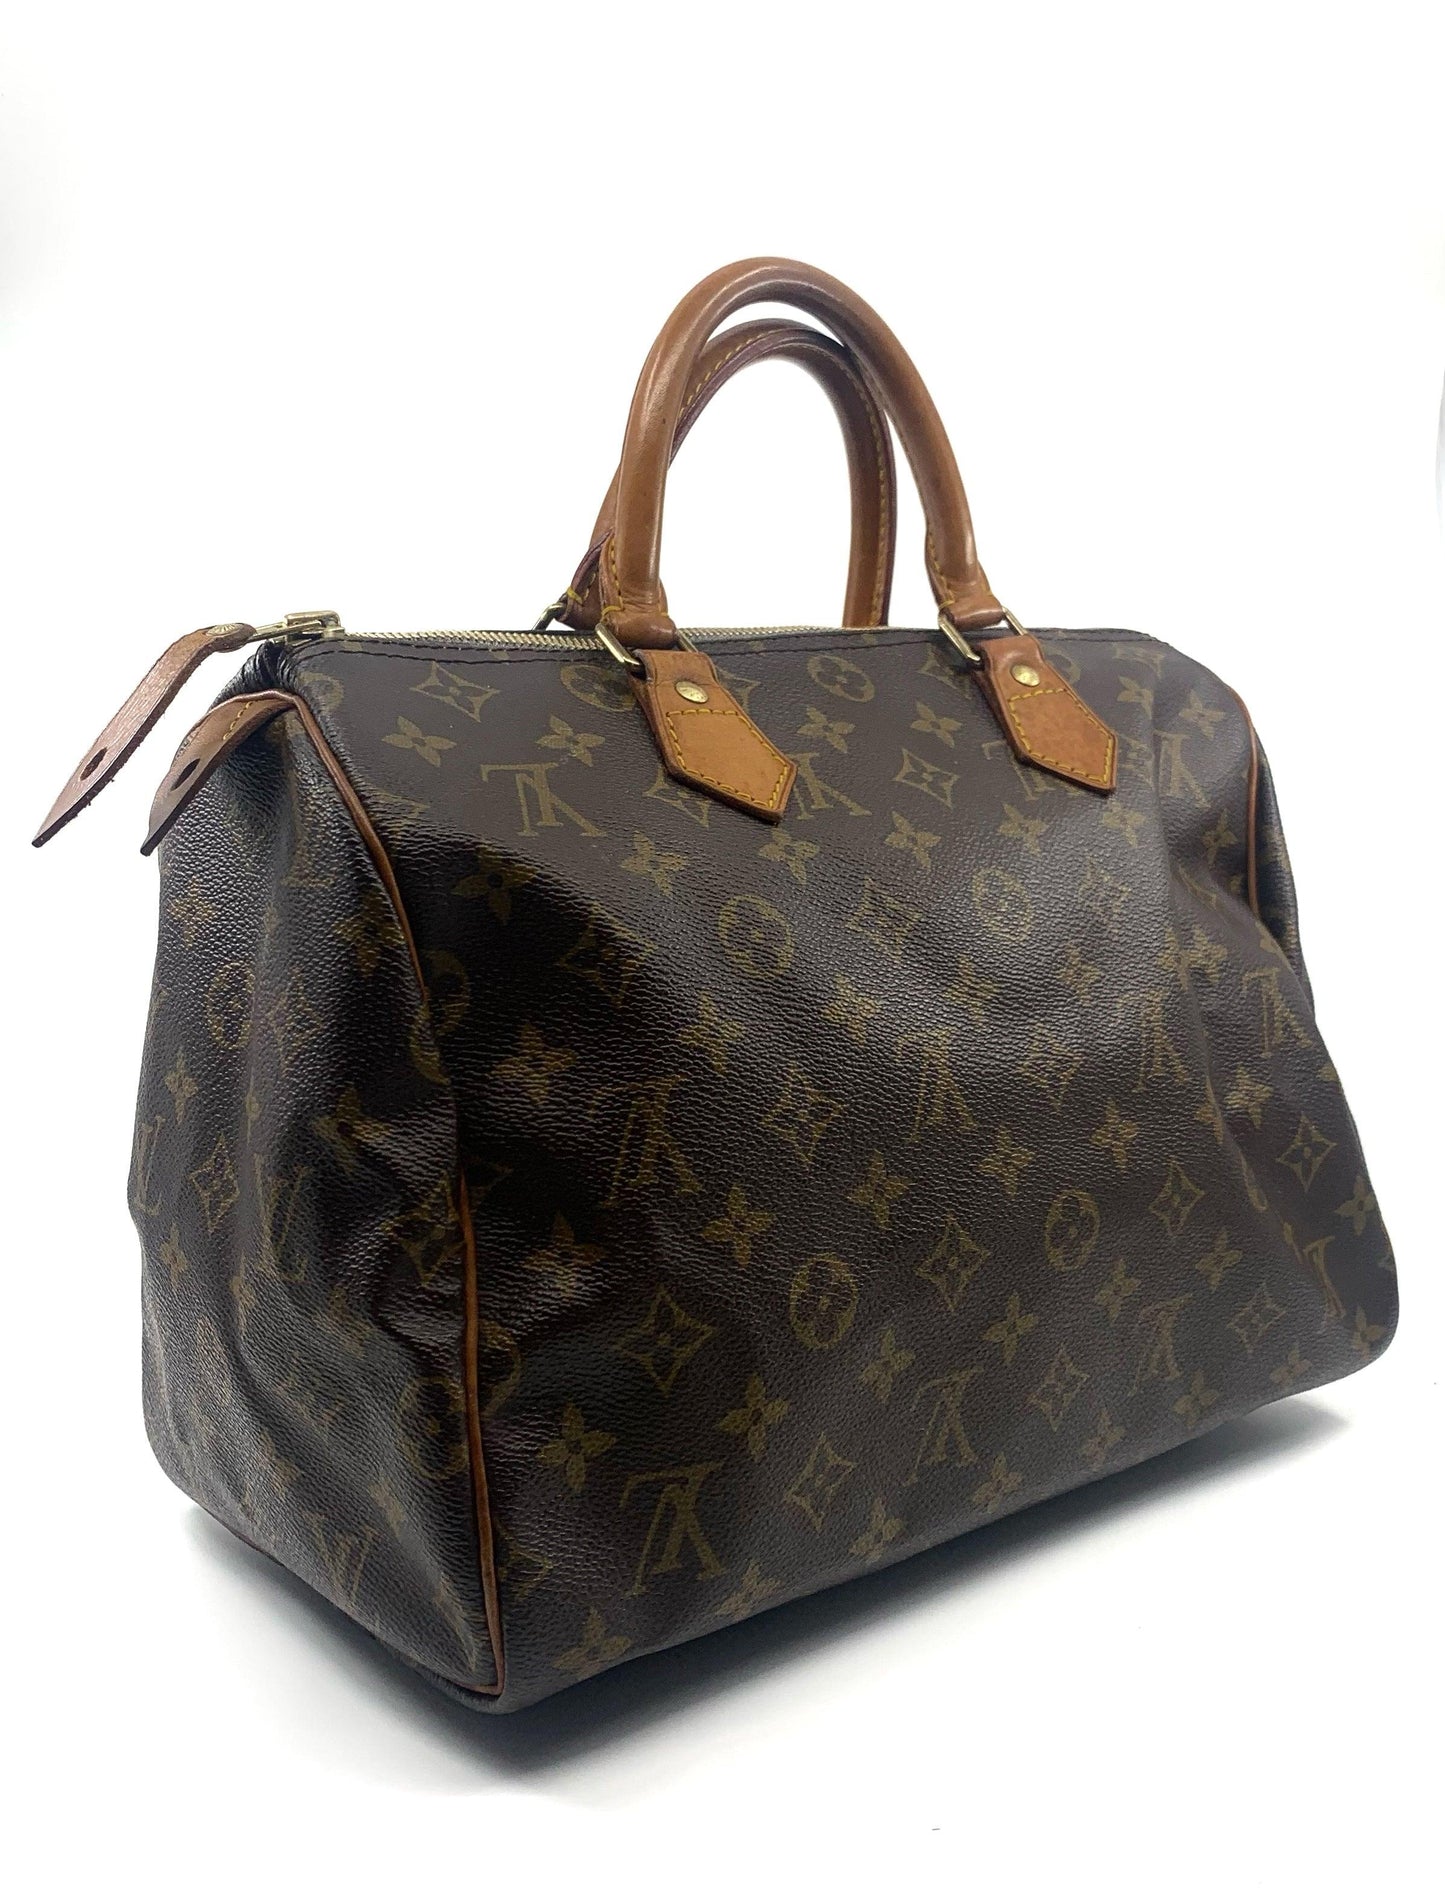 Louis Vuitton Monogram Speedy 30 - THE BAG | COLLECTIVE